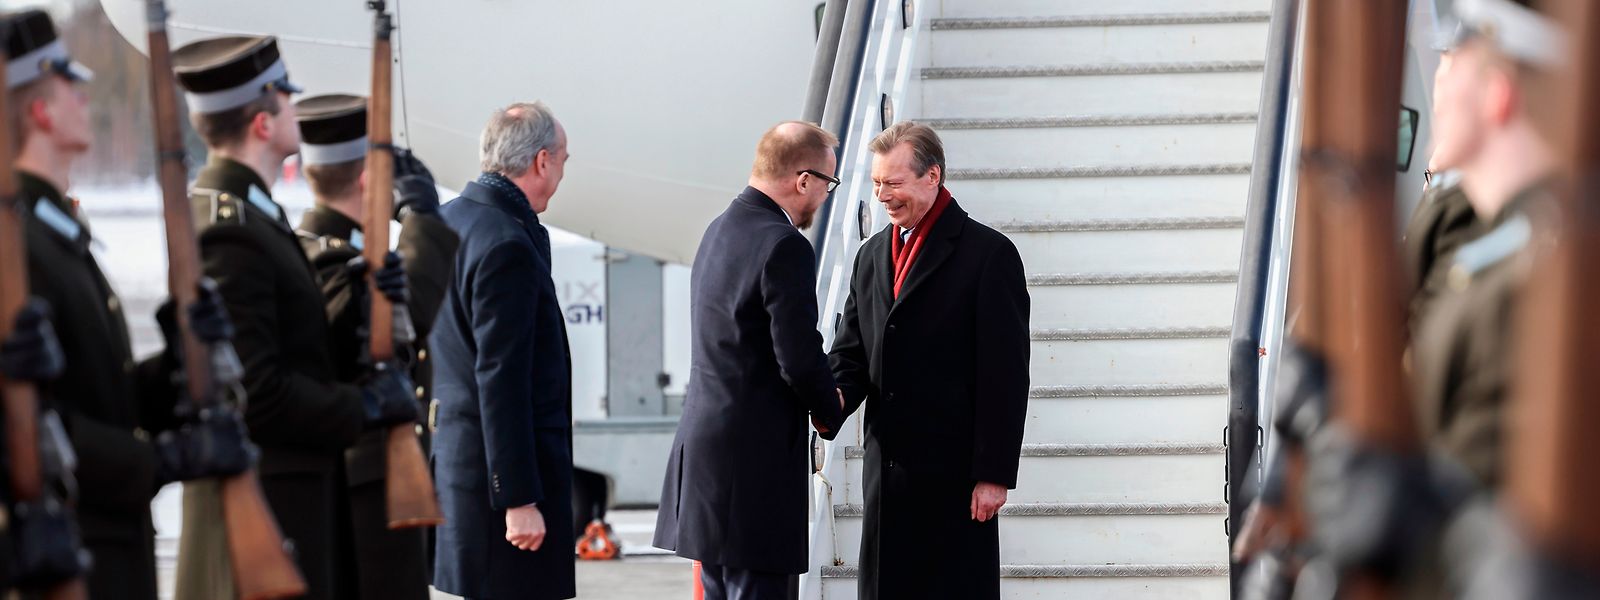 Paul Schmit, embaixador do Grão-Ducado do Luxemburgo na Letónia e  Raimonds Jansons, chefe do protocolo do governo recebem o Grâo-Duque Henri à chegada à Letónia.